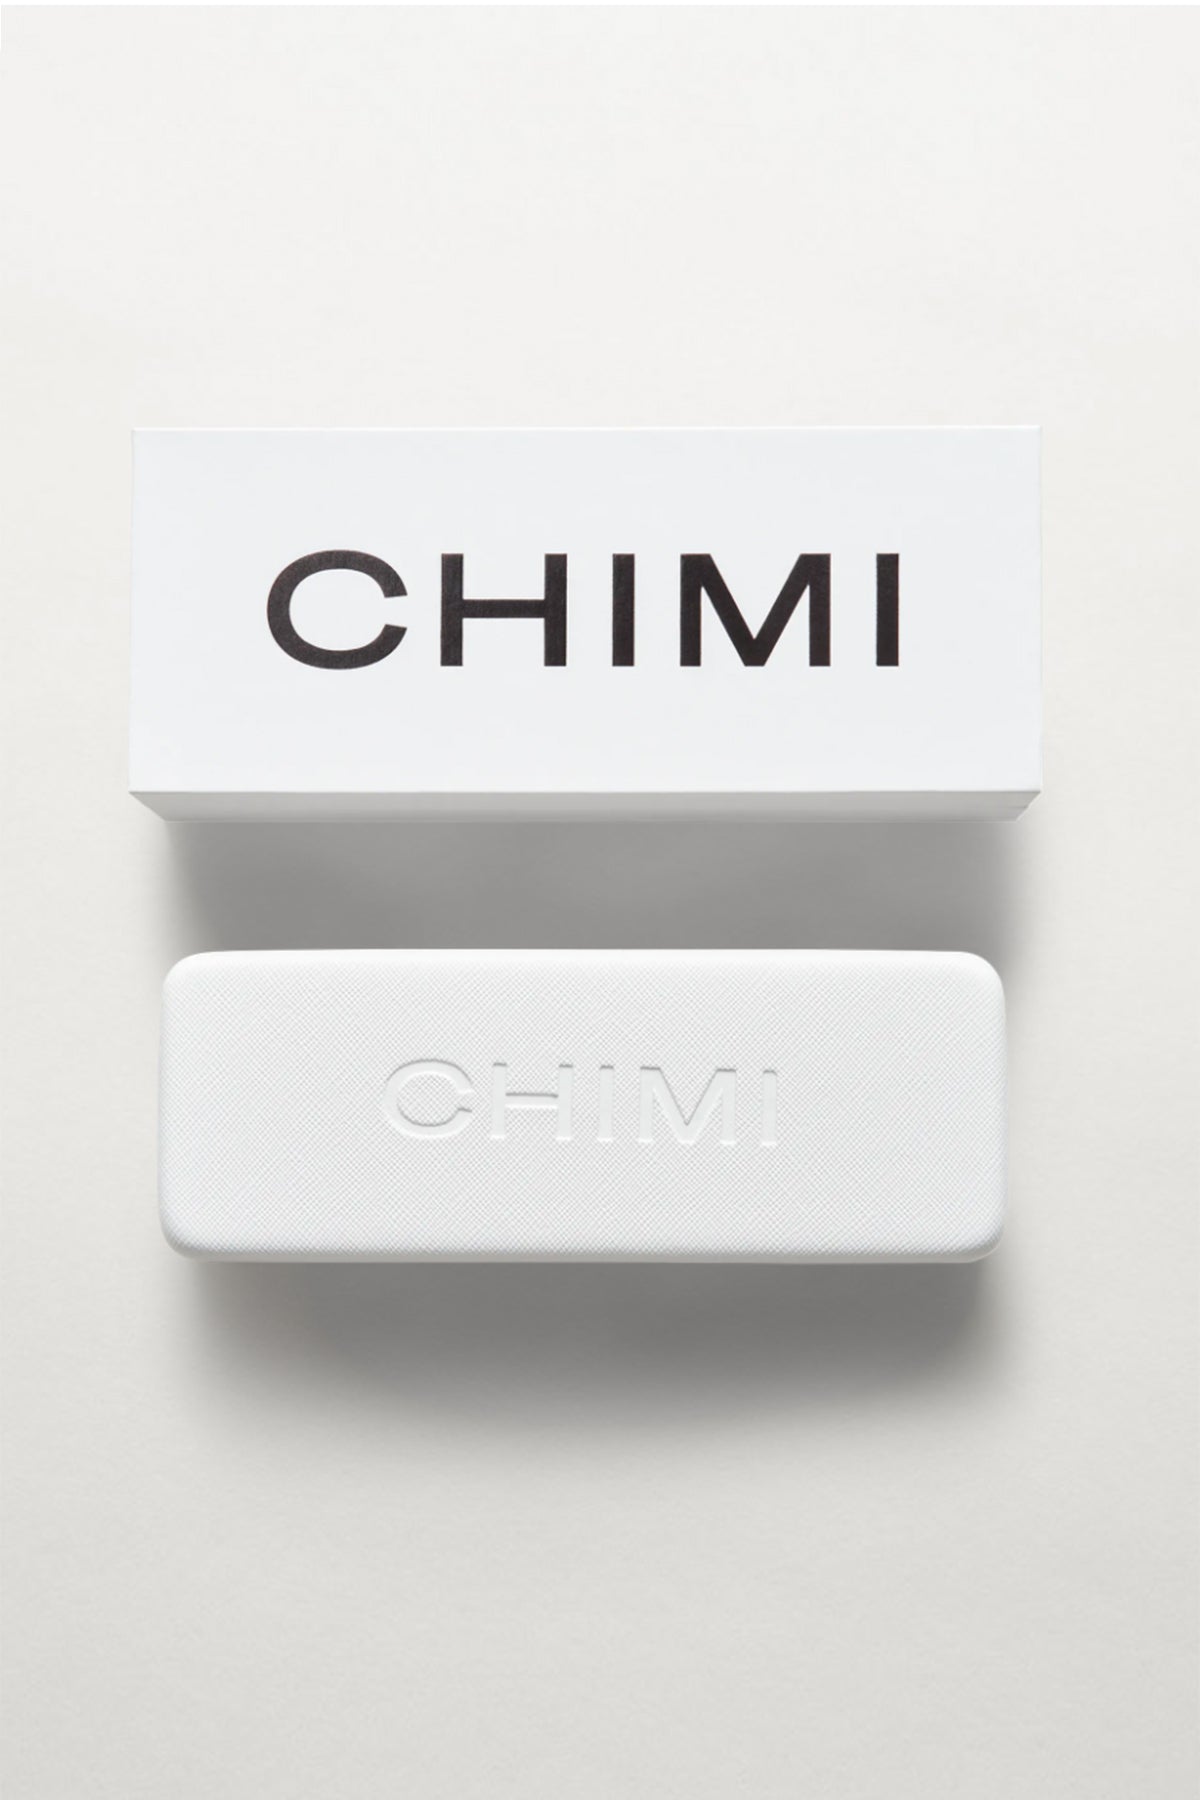 Chimi Sunglasses Case and Box-24653373735105